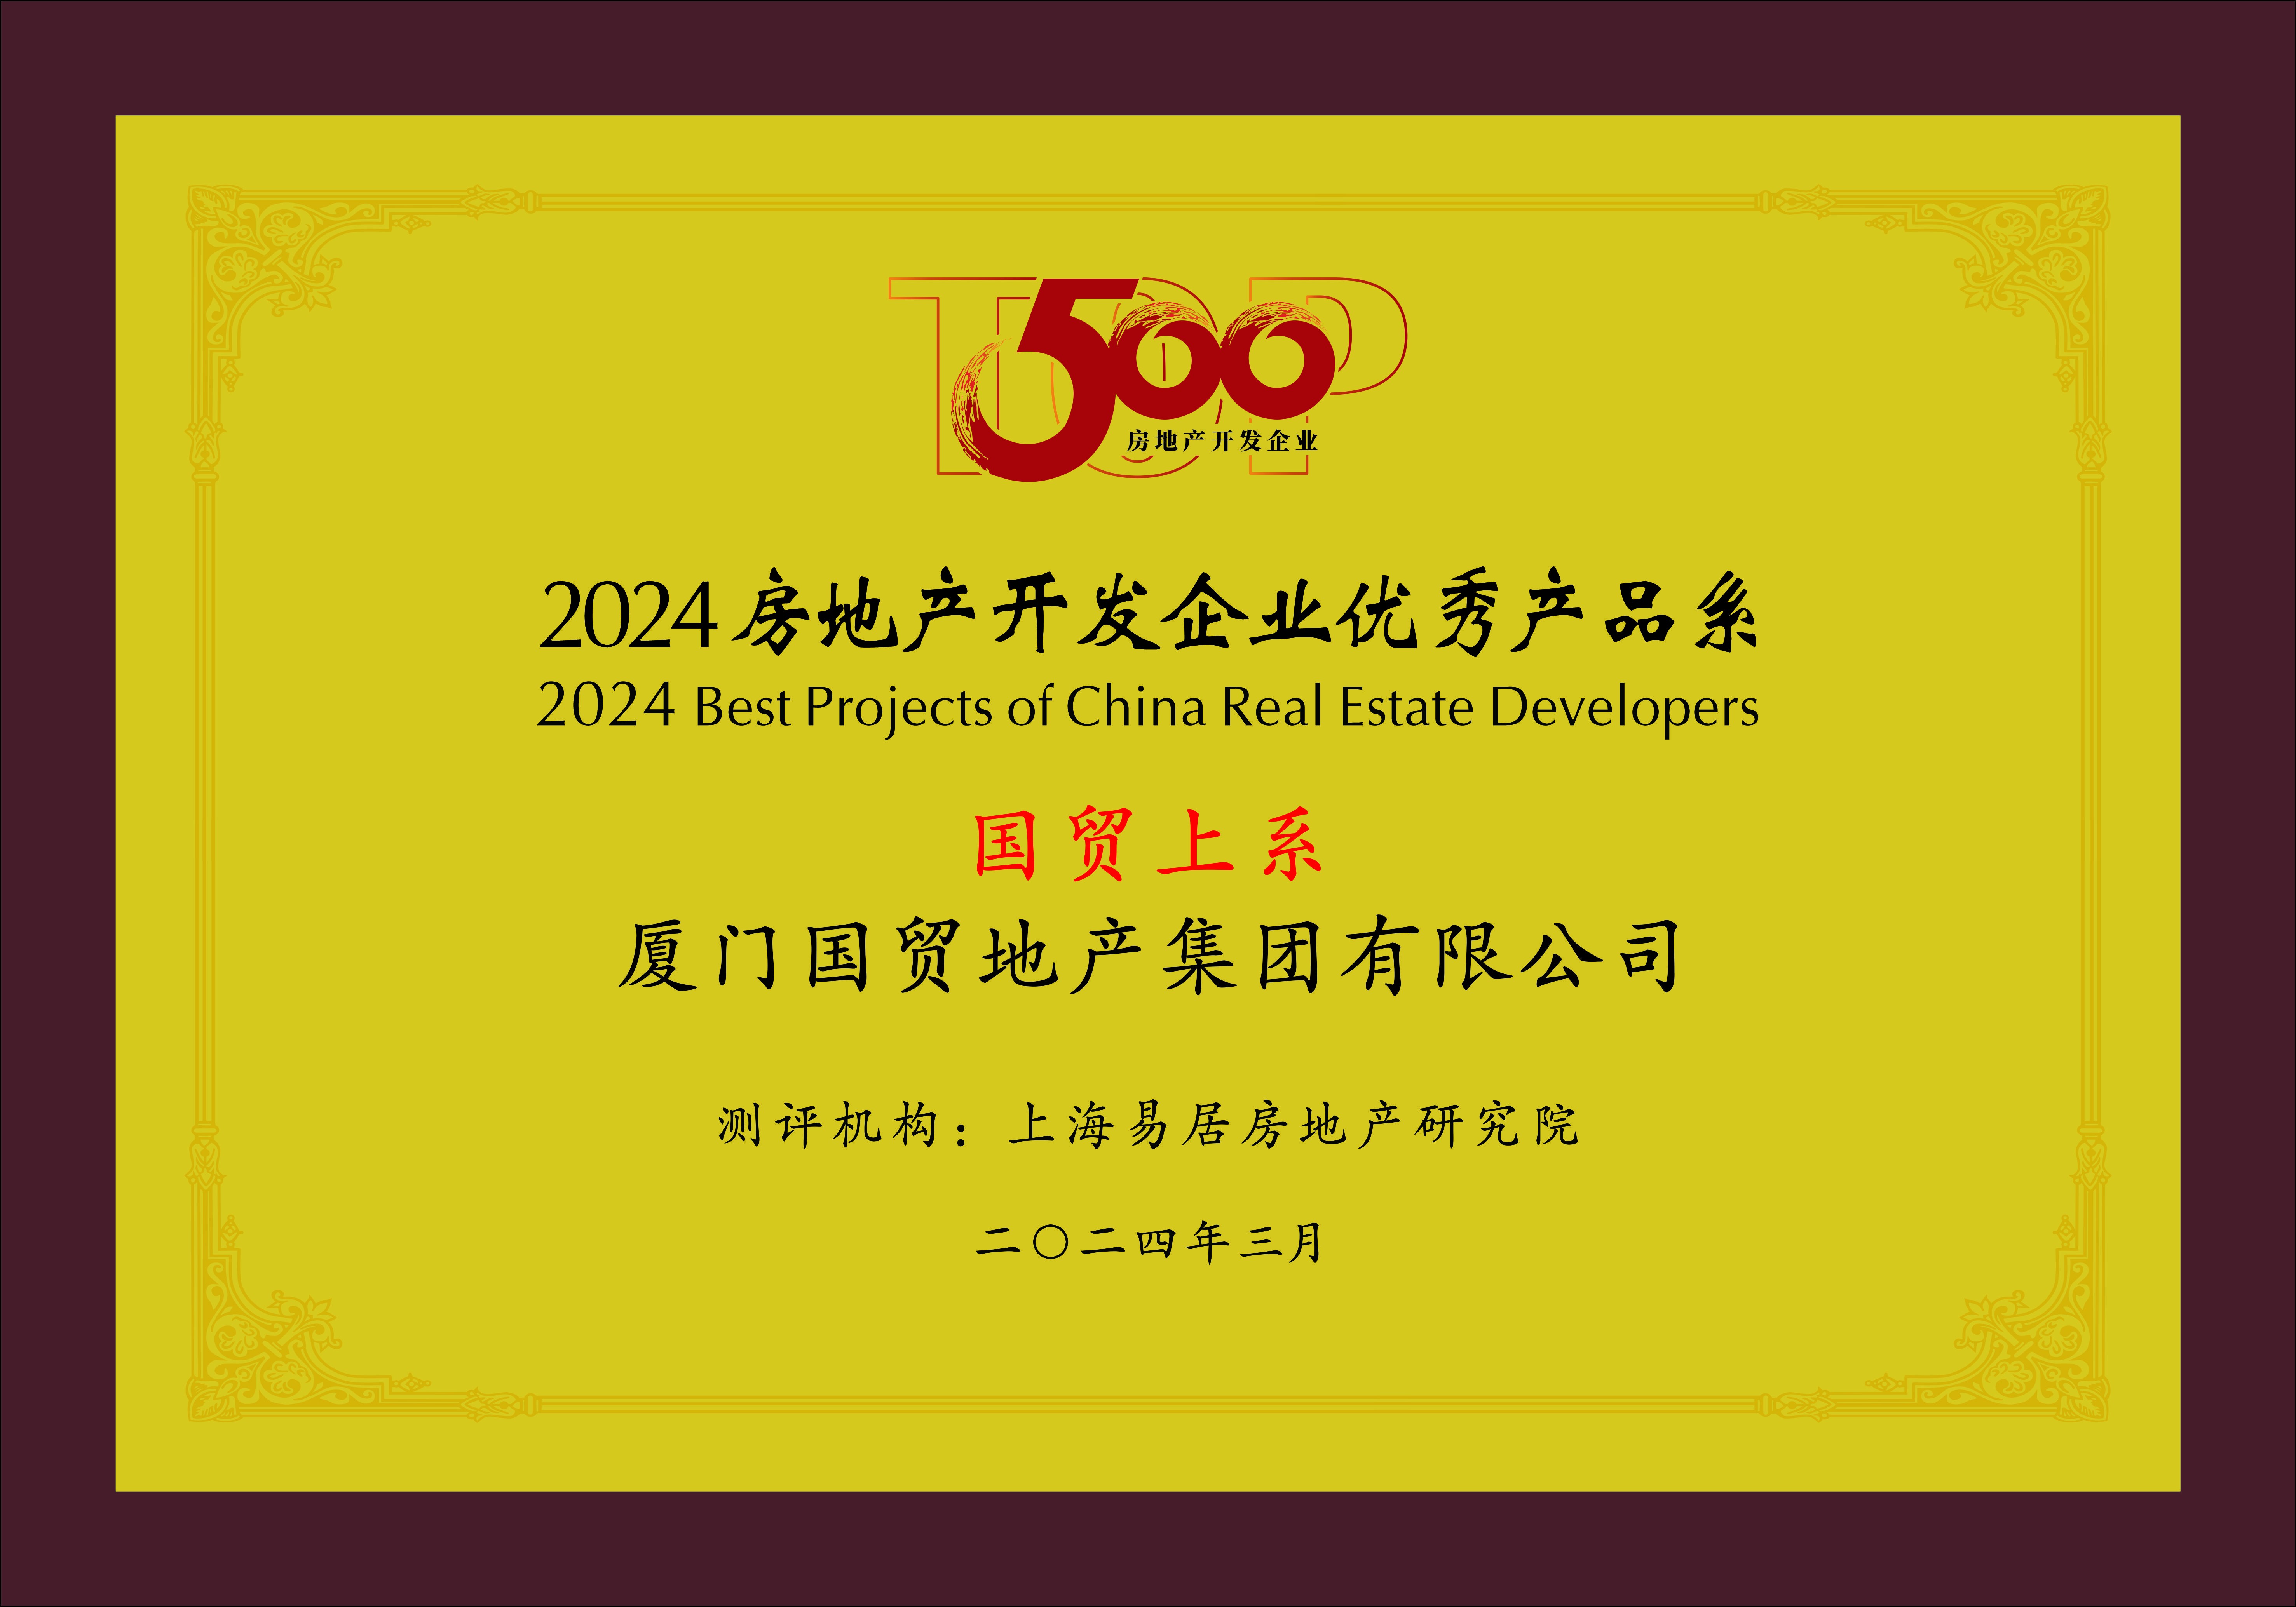 2-4 2024房地产开发企业优秀产品系.jpg